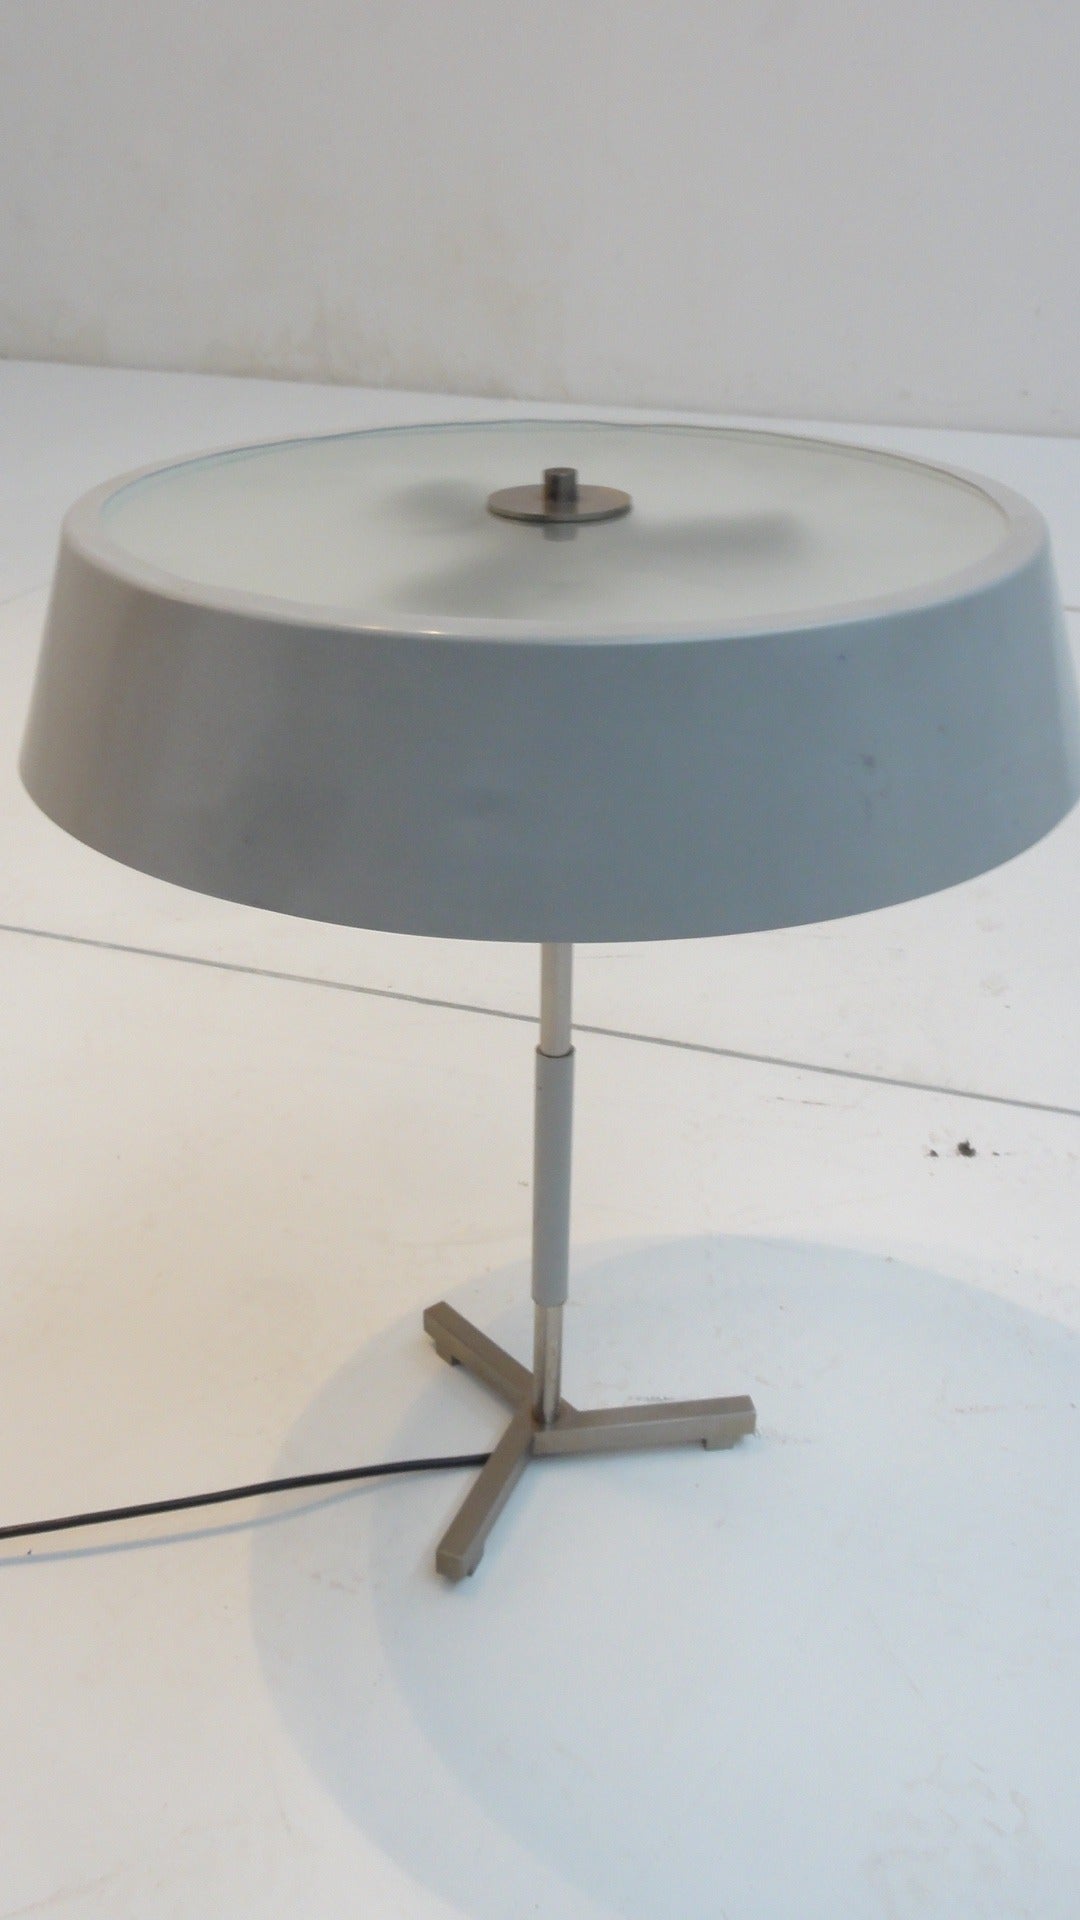 Eine hochwertig gefertigte Schreibtischlampe des niederländischen Designers H. Fillekes, der für das Rotterdamer Beleuchtungsunternehmen Artiforte arbeitete 

Ein vernickelter, skulpturaler Dreibein-Sockel hält einen grau emaillierten Metallschirm